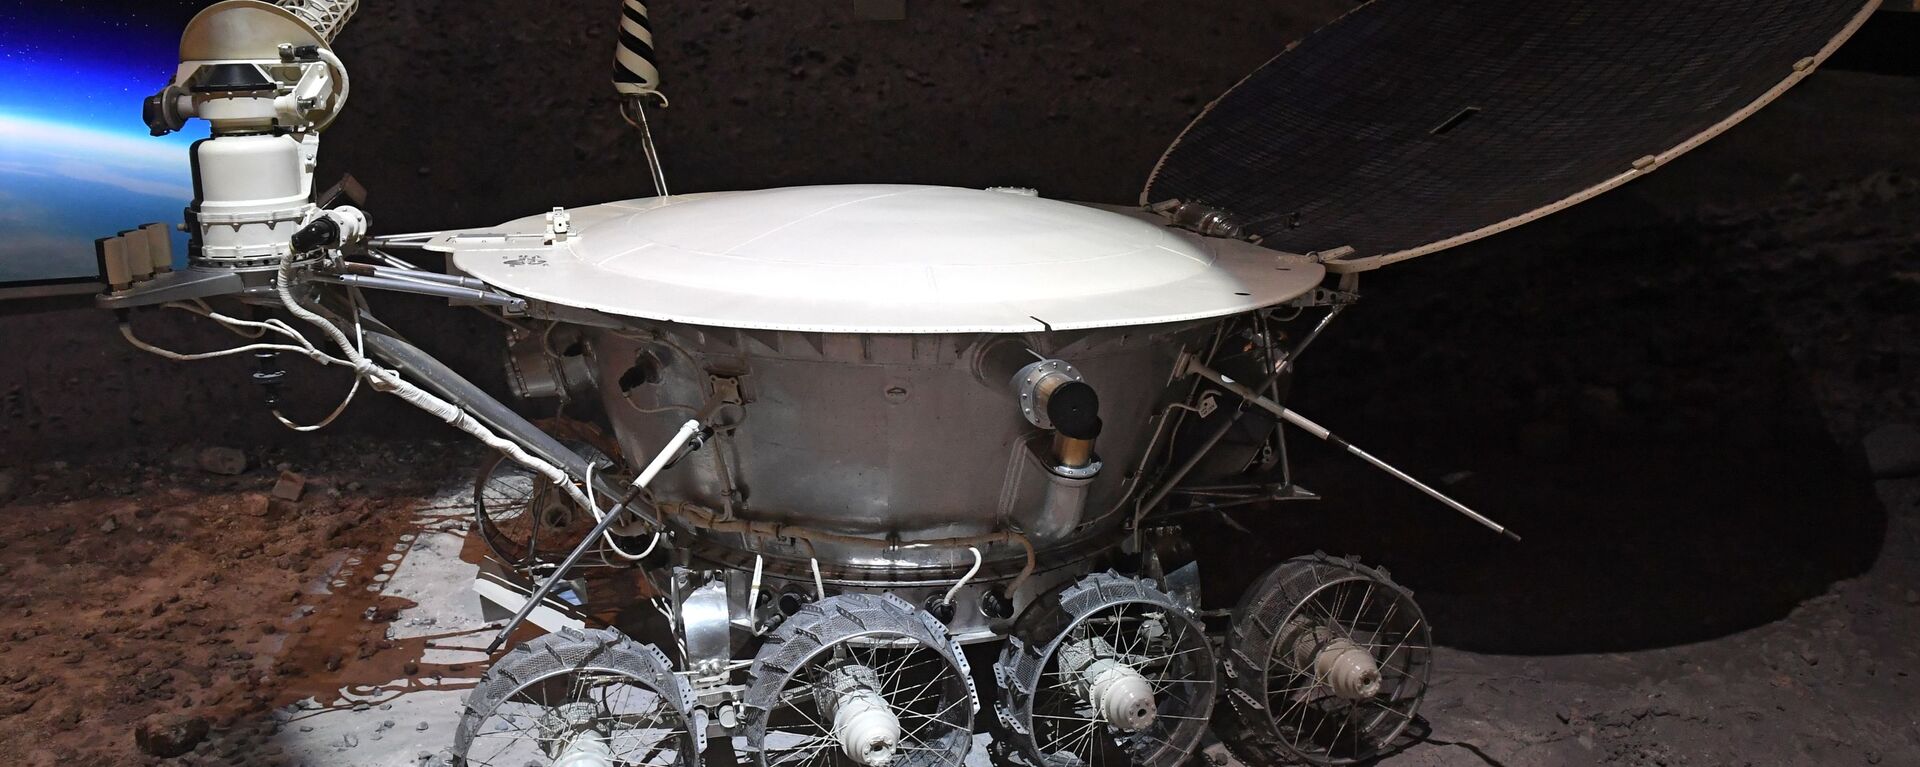 Макет «Лунохода-1» - первого лунохода, доставленного на Луну - Sputnik Армения, 1920, 12.04.2021